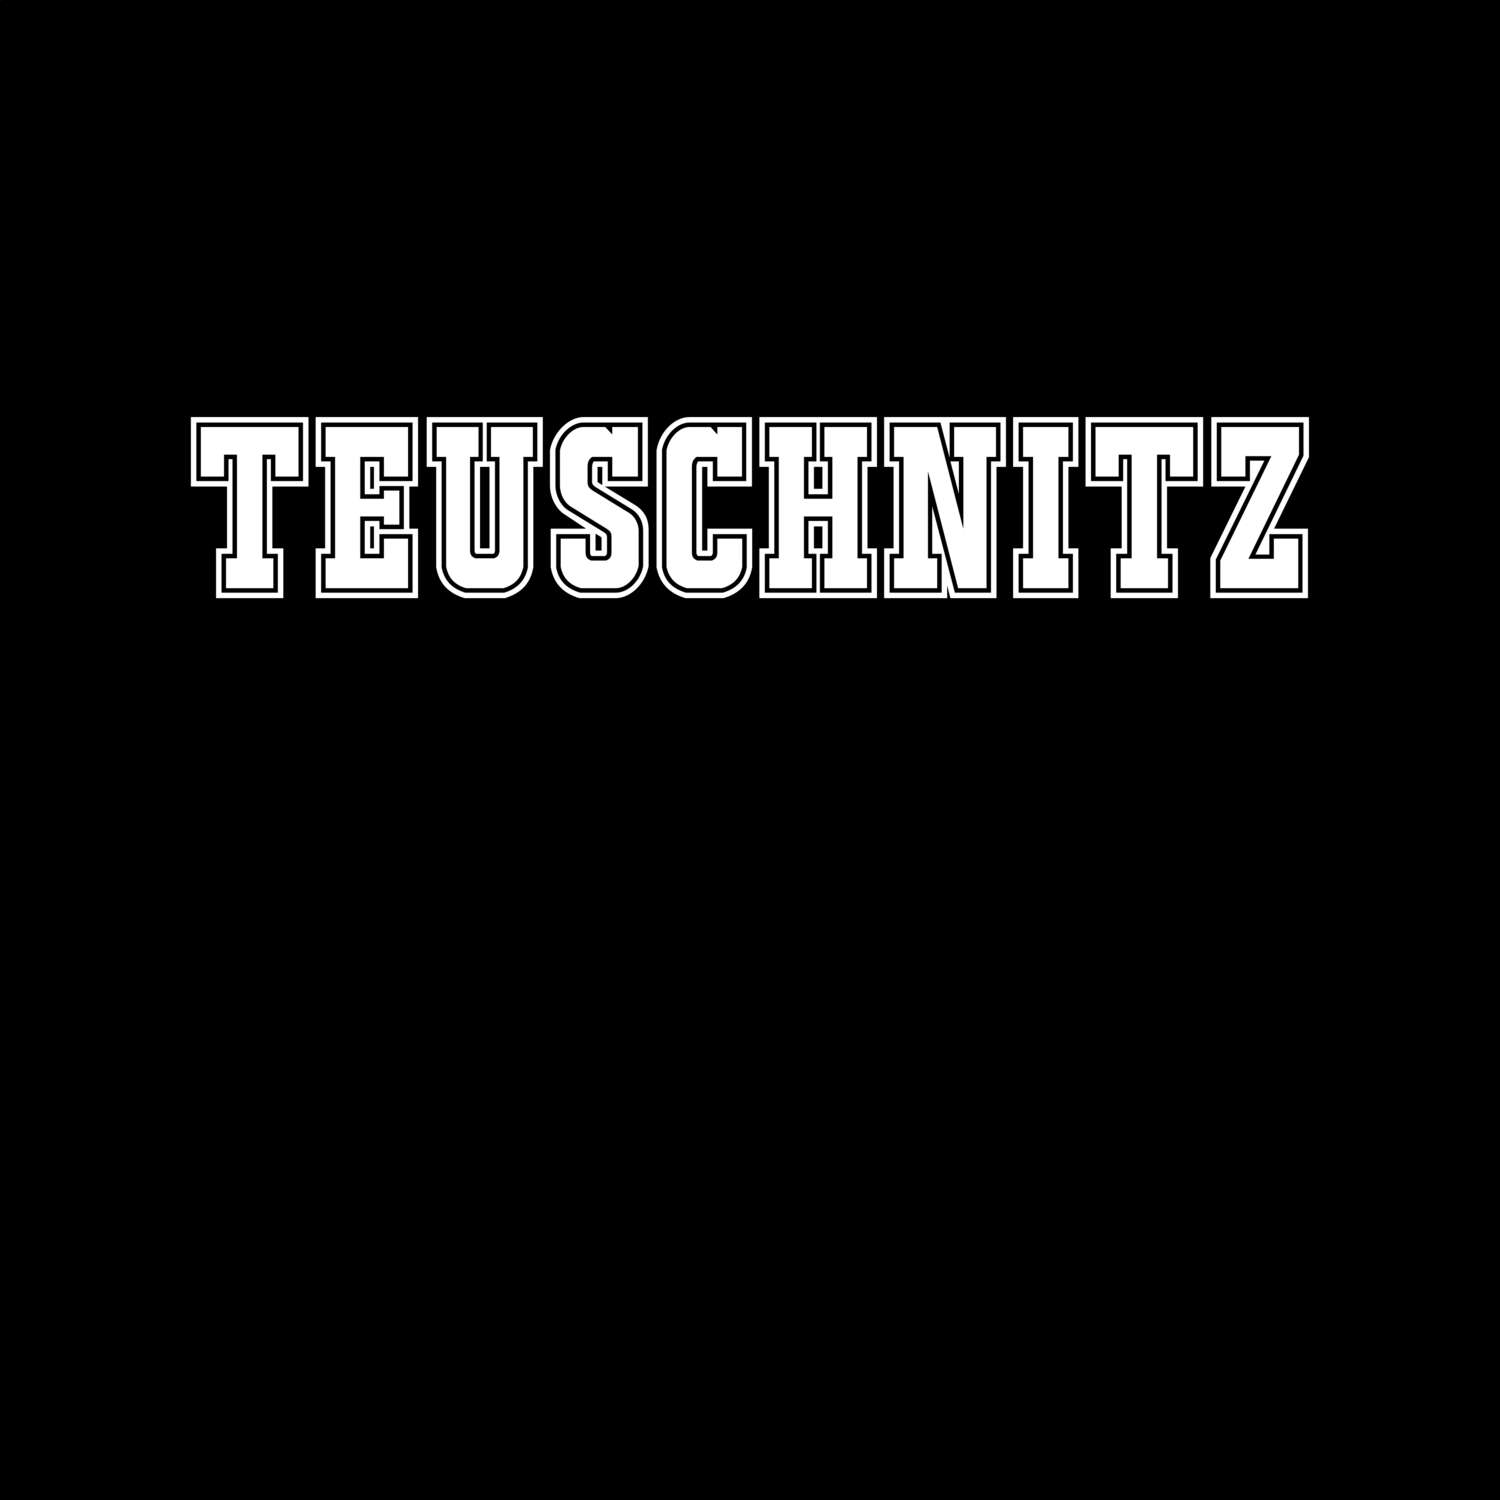 Teuschnitz T-Shirt »Classic«